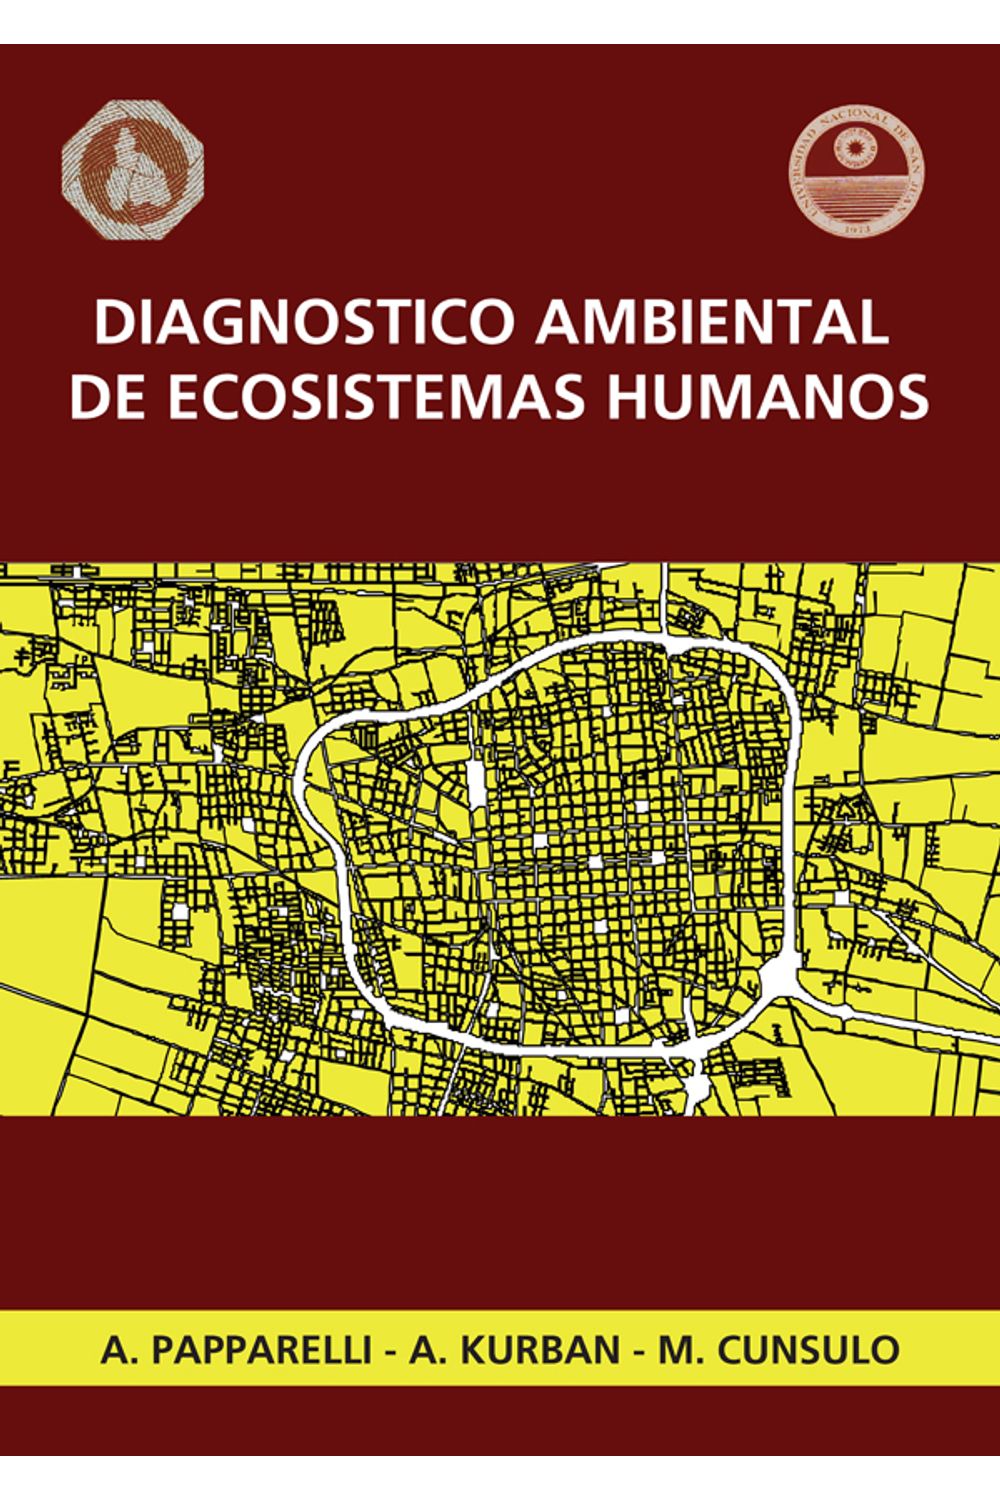 bm-diagnostico-ambiental-de-ecosistemas-humanos-nobukodiseno-editorial-9789871135479